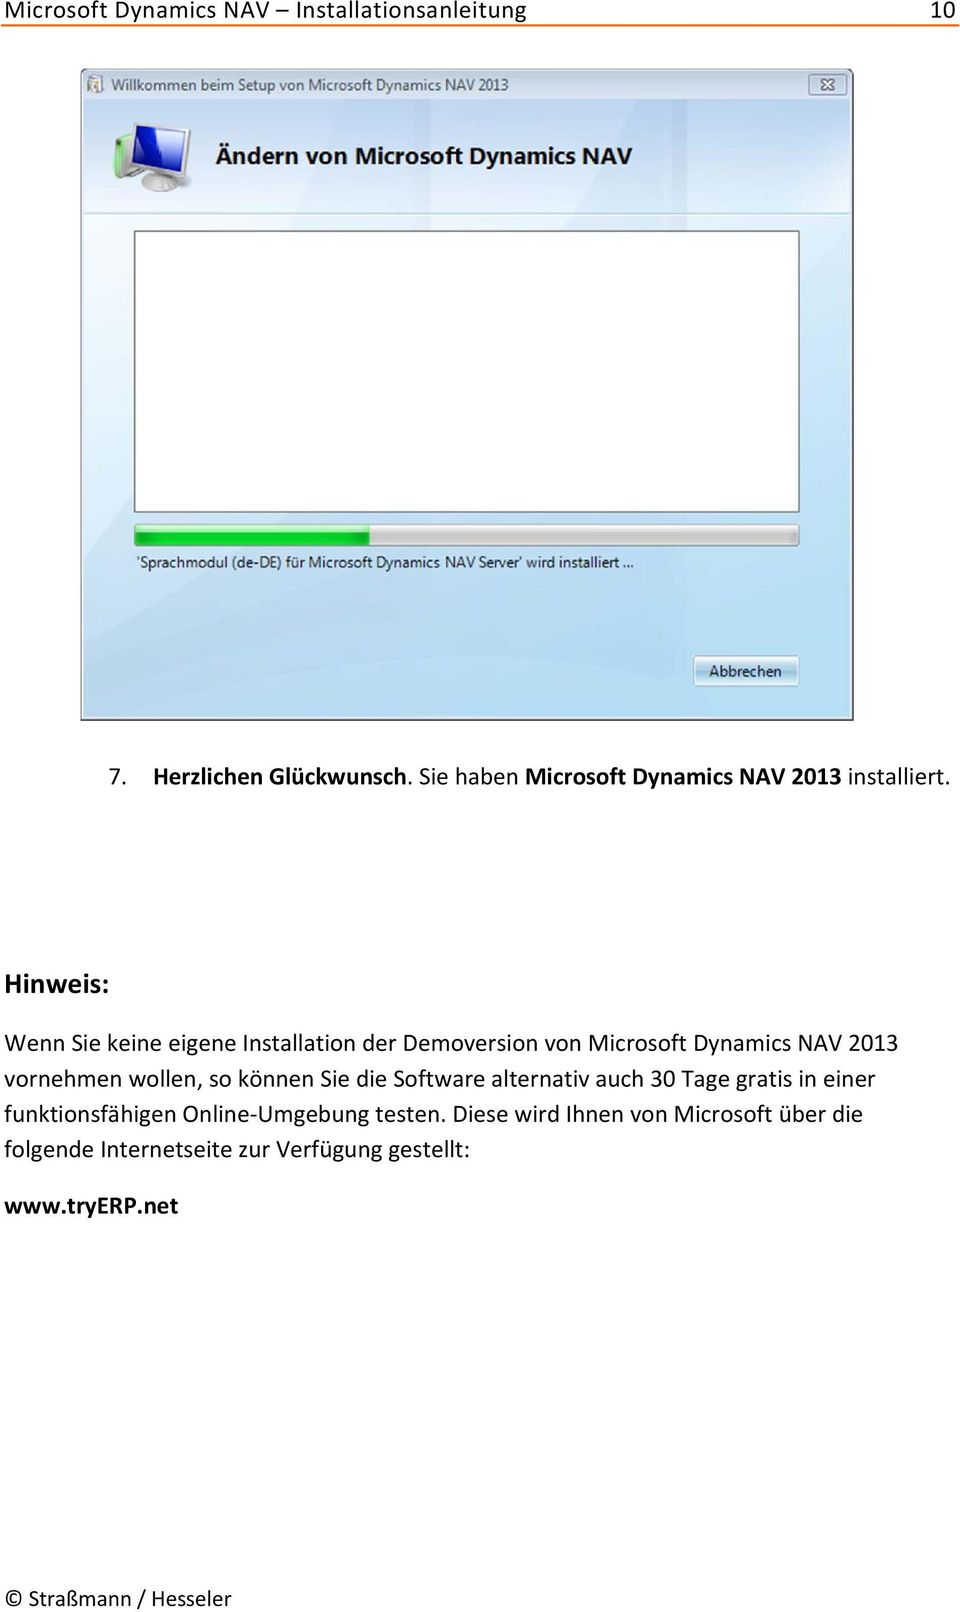 Hinweis: Wenn Sie keine eigene Installation der Demoversion von Microsoft Dynamics NAV 2013 vornehmen wollen,